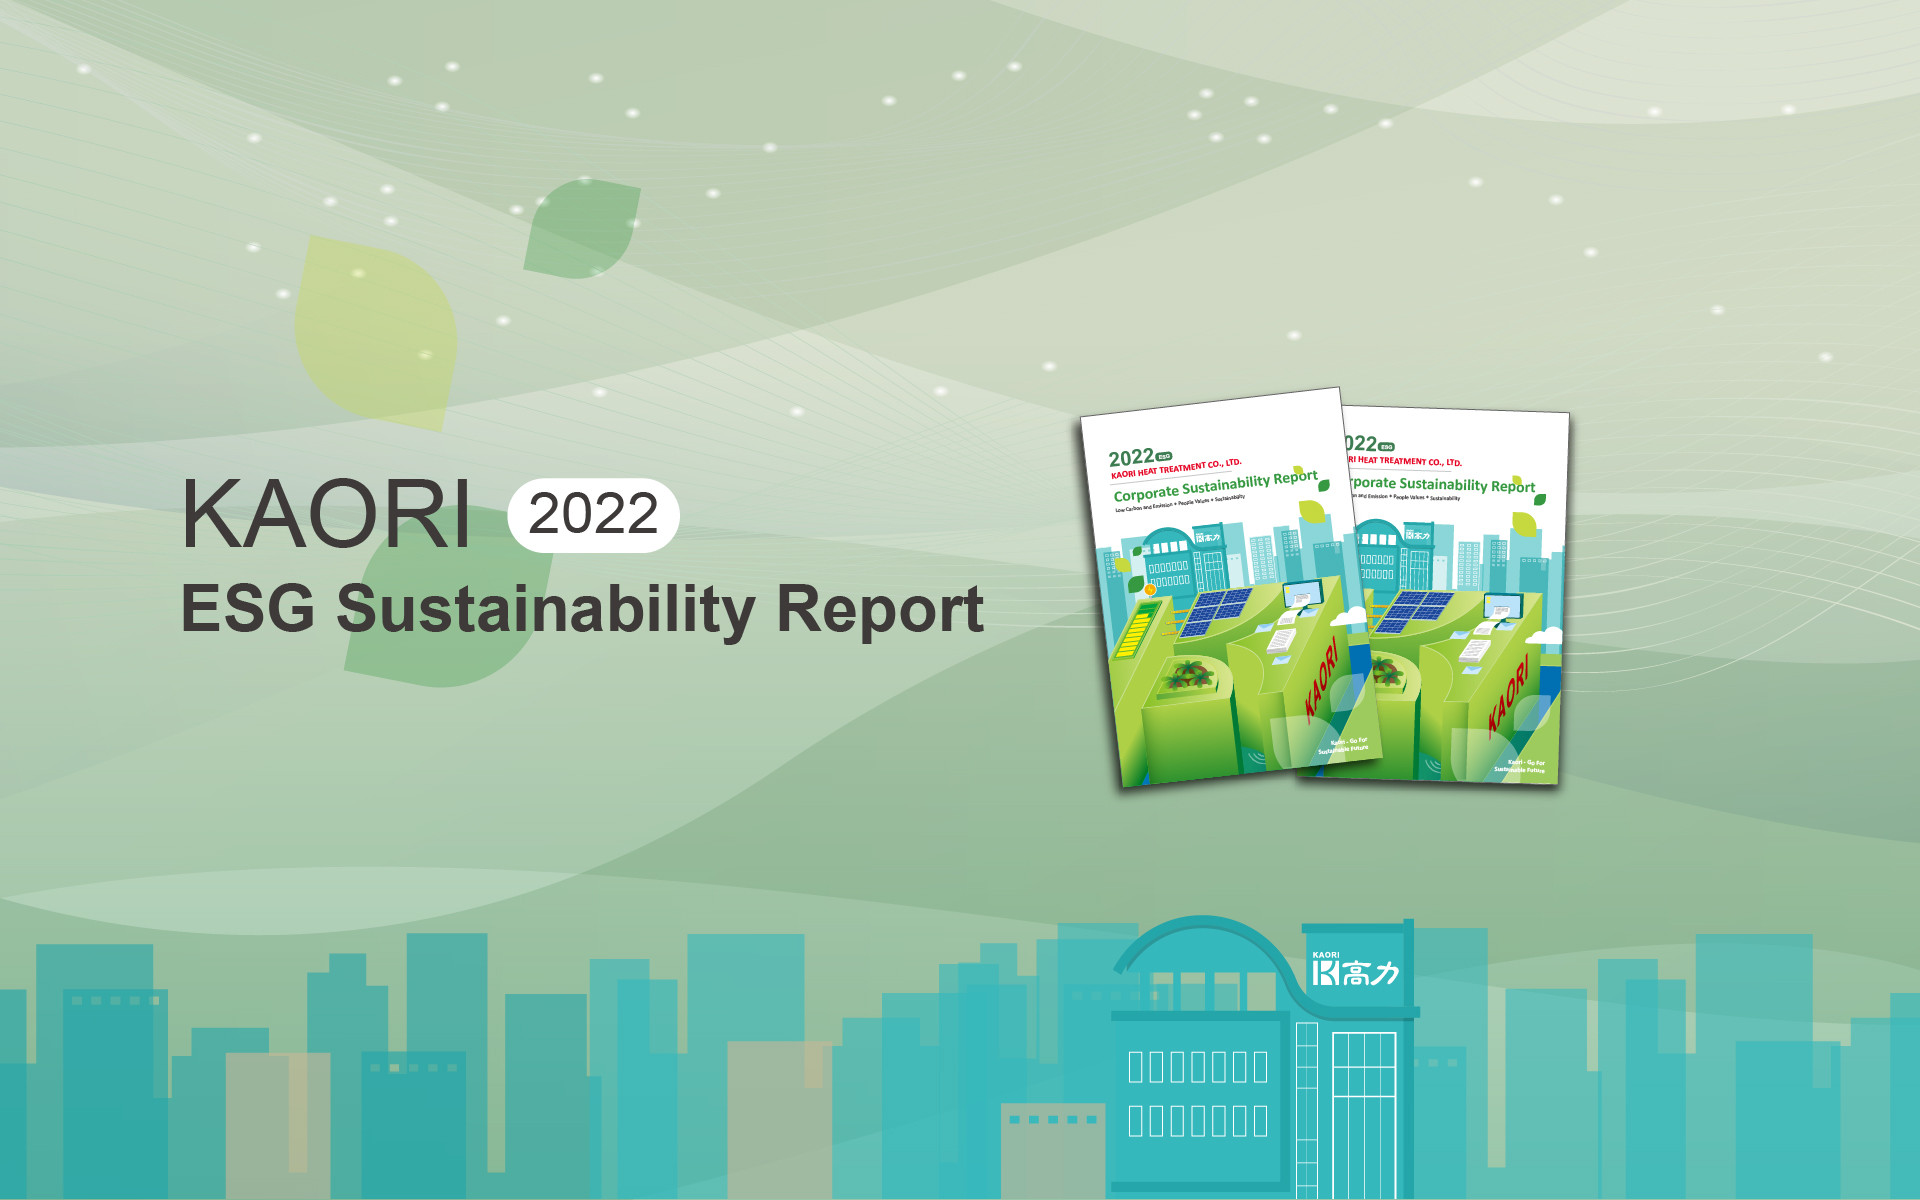 高力發表2022年企業永續報告書 強化ESG資訊揭露